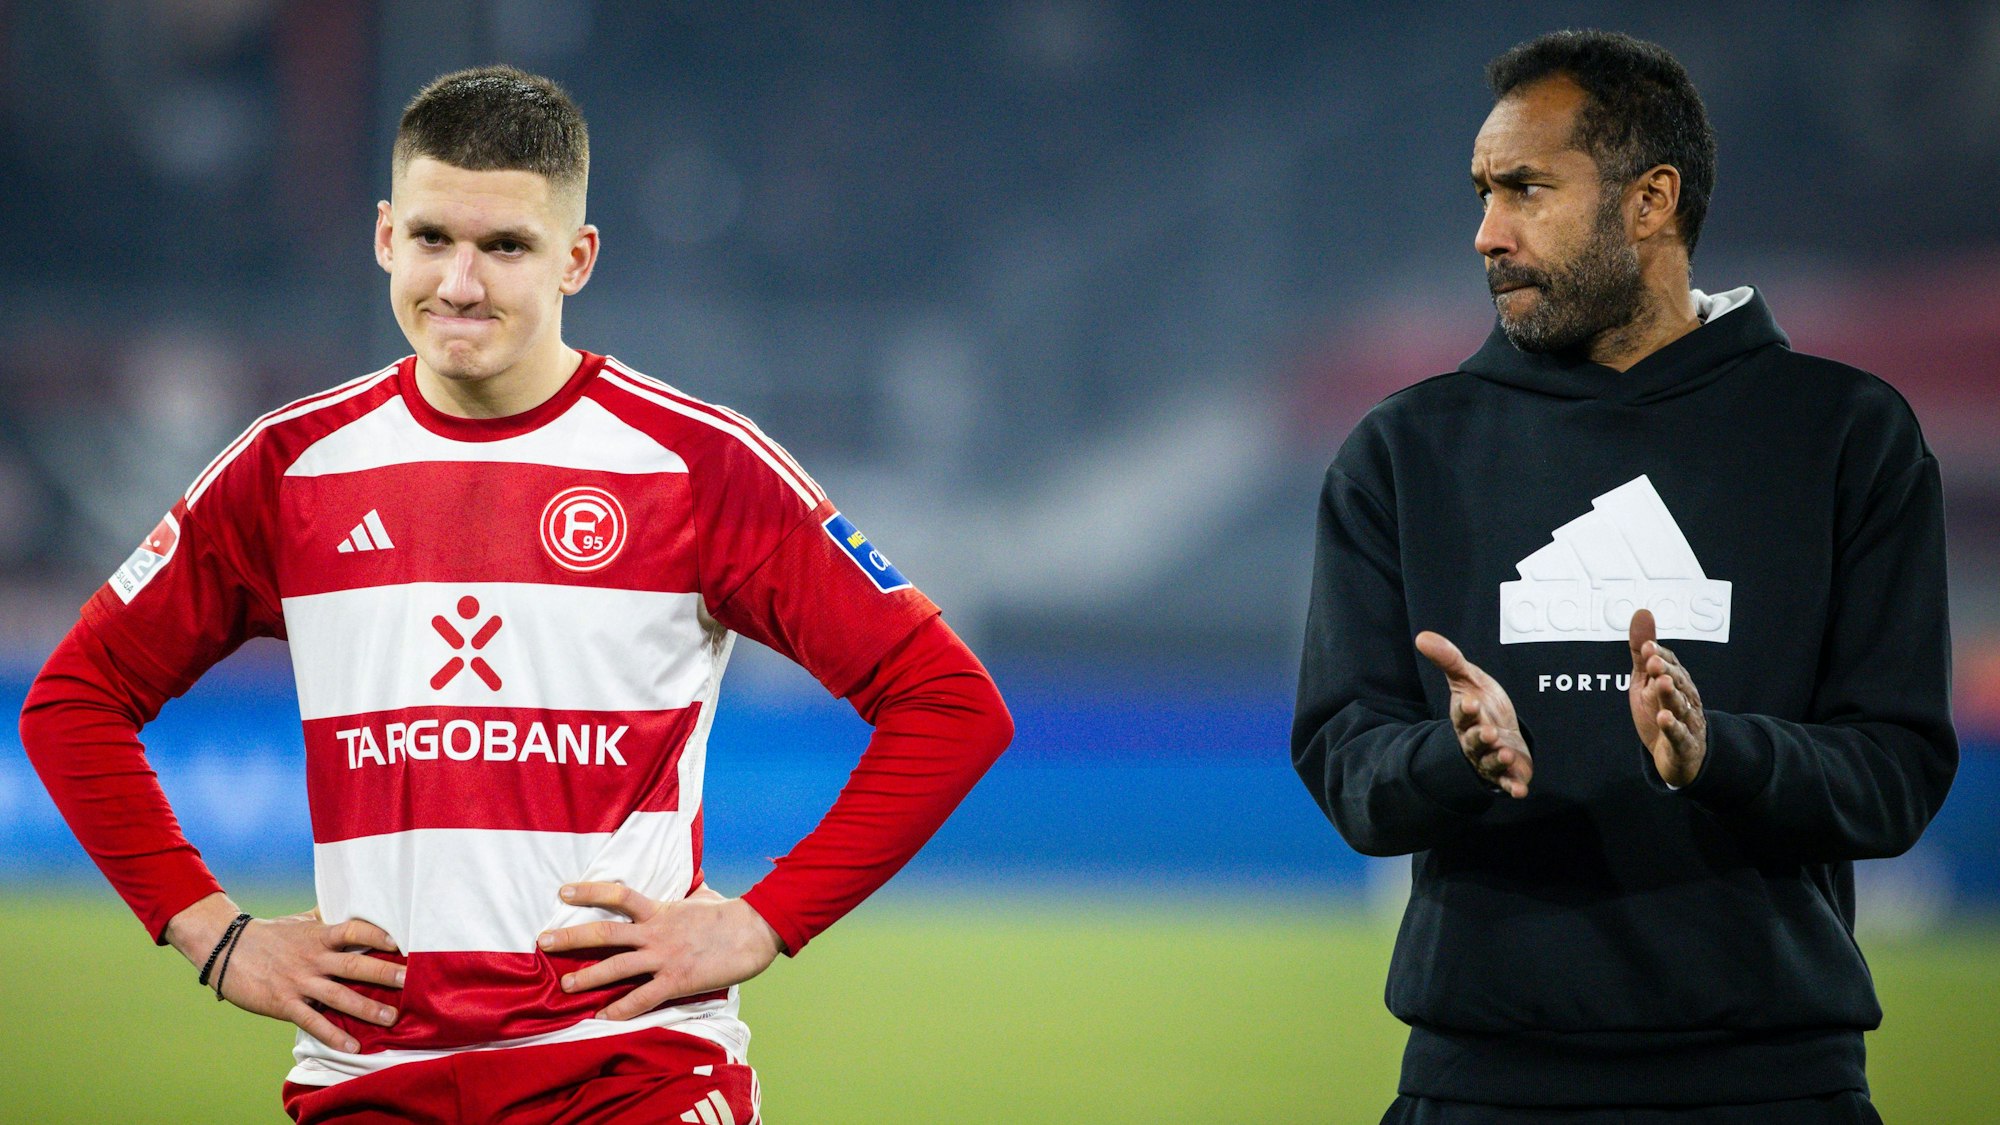 Fortuna Düsseldorfs Cheftrainer Daniel Thioune steht nach dem Schlusspfiff mit seinem Spieler Christos Tzolis vor der Fankurve.